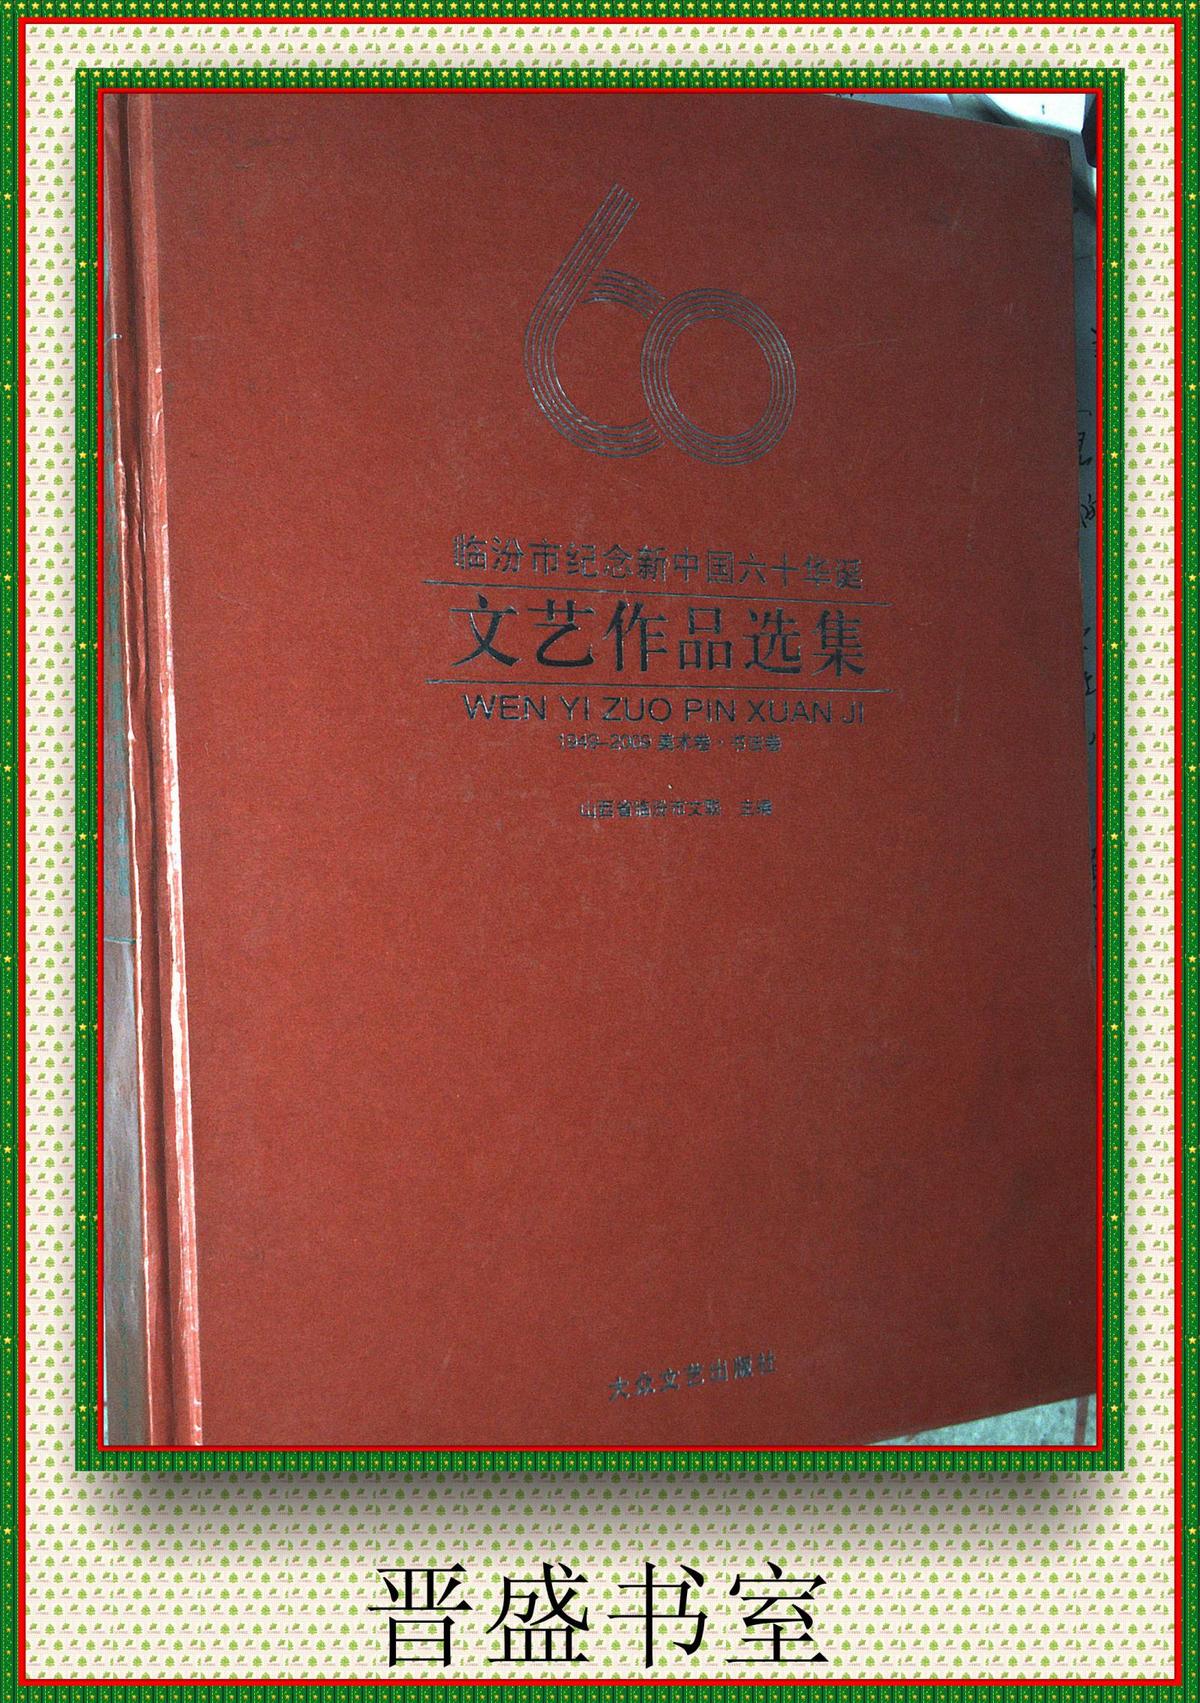 临汾市纪念新中国六十华诞文艺作品选集1949--2009美术、书法卷